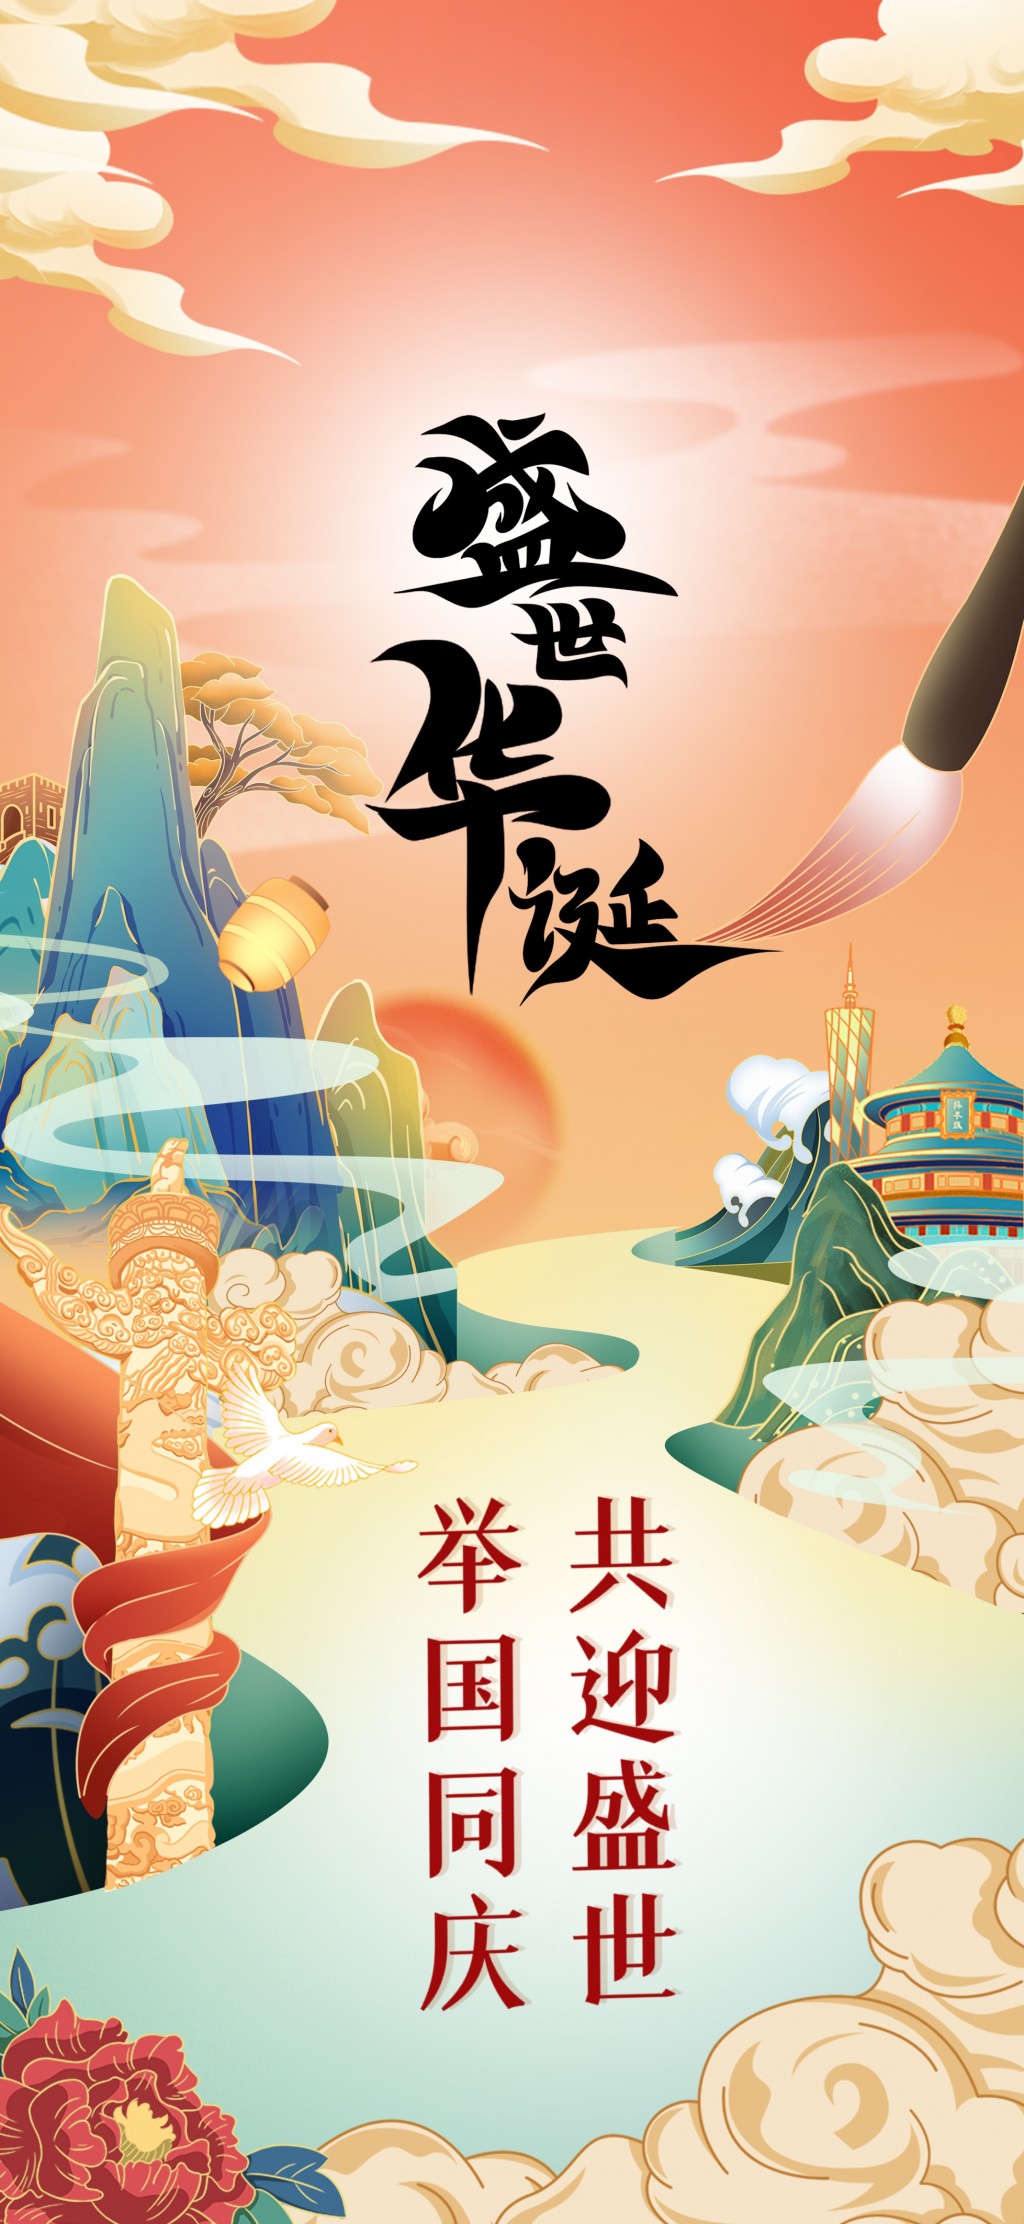 国庆节祝福文字插画手机壁纸